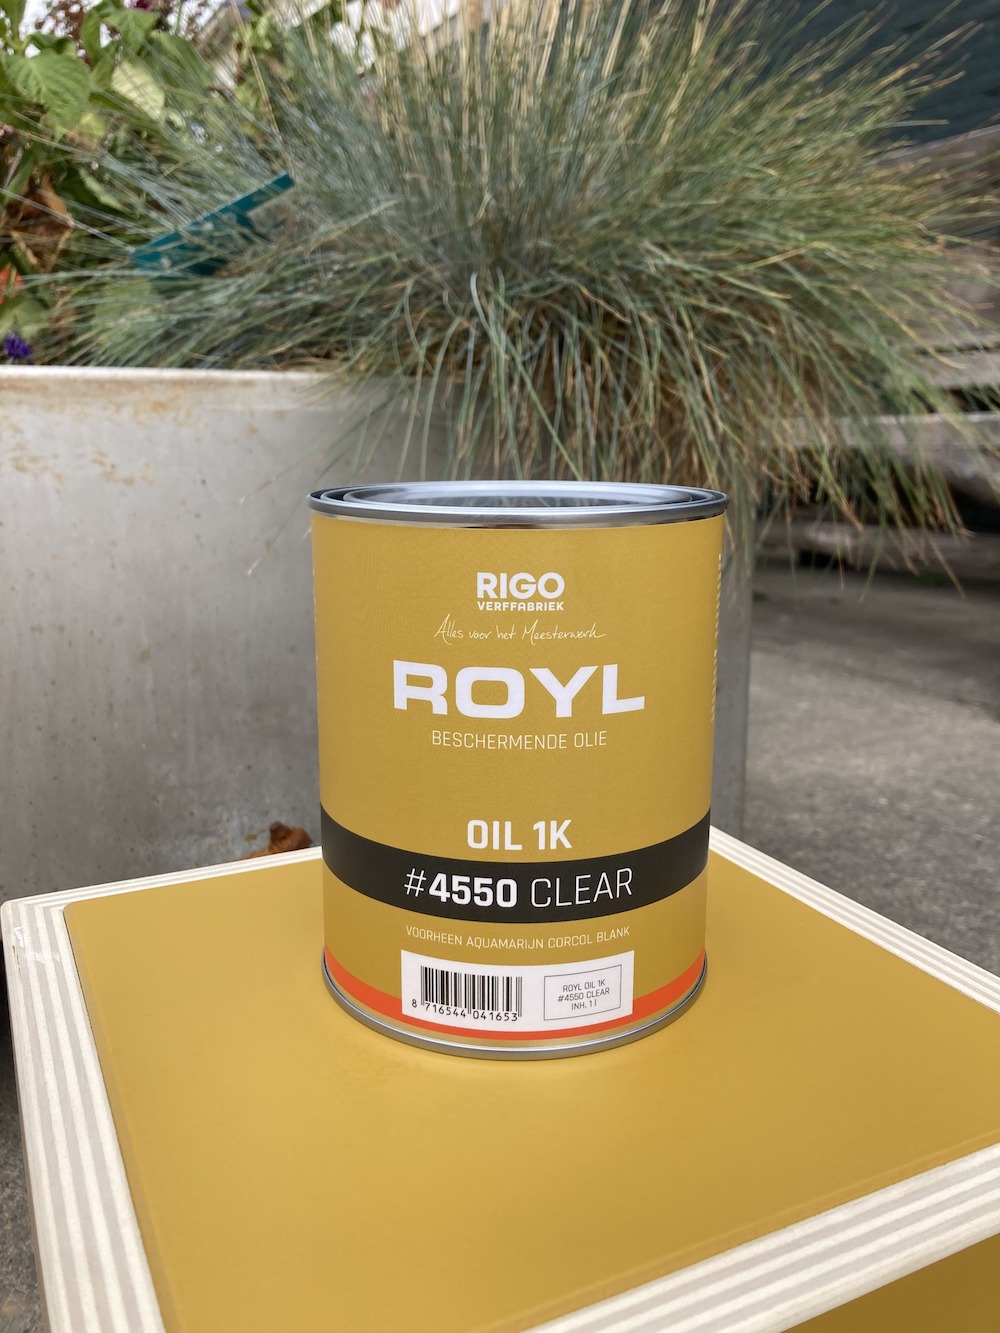 ROYL Oil 1K | RIGO Verffabriek